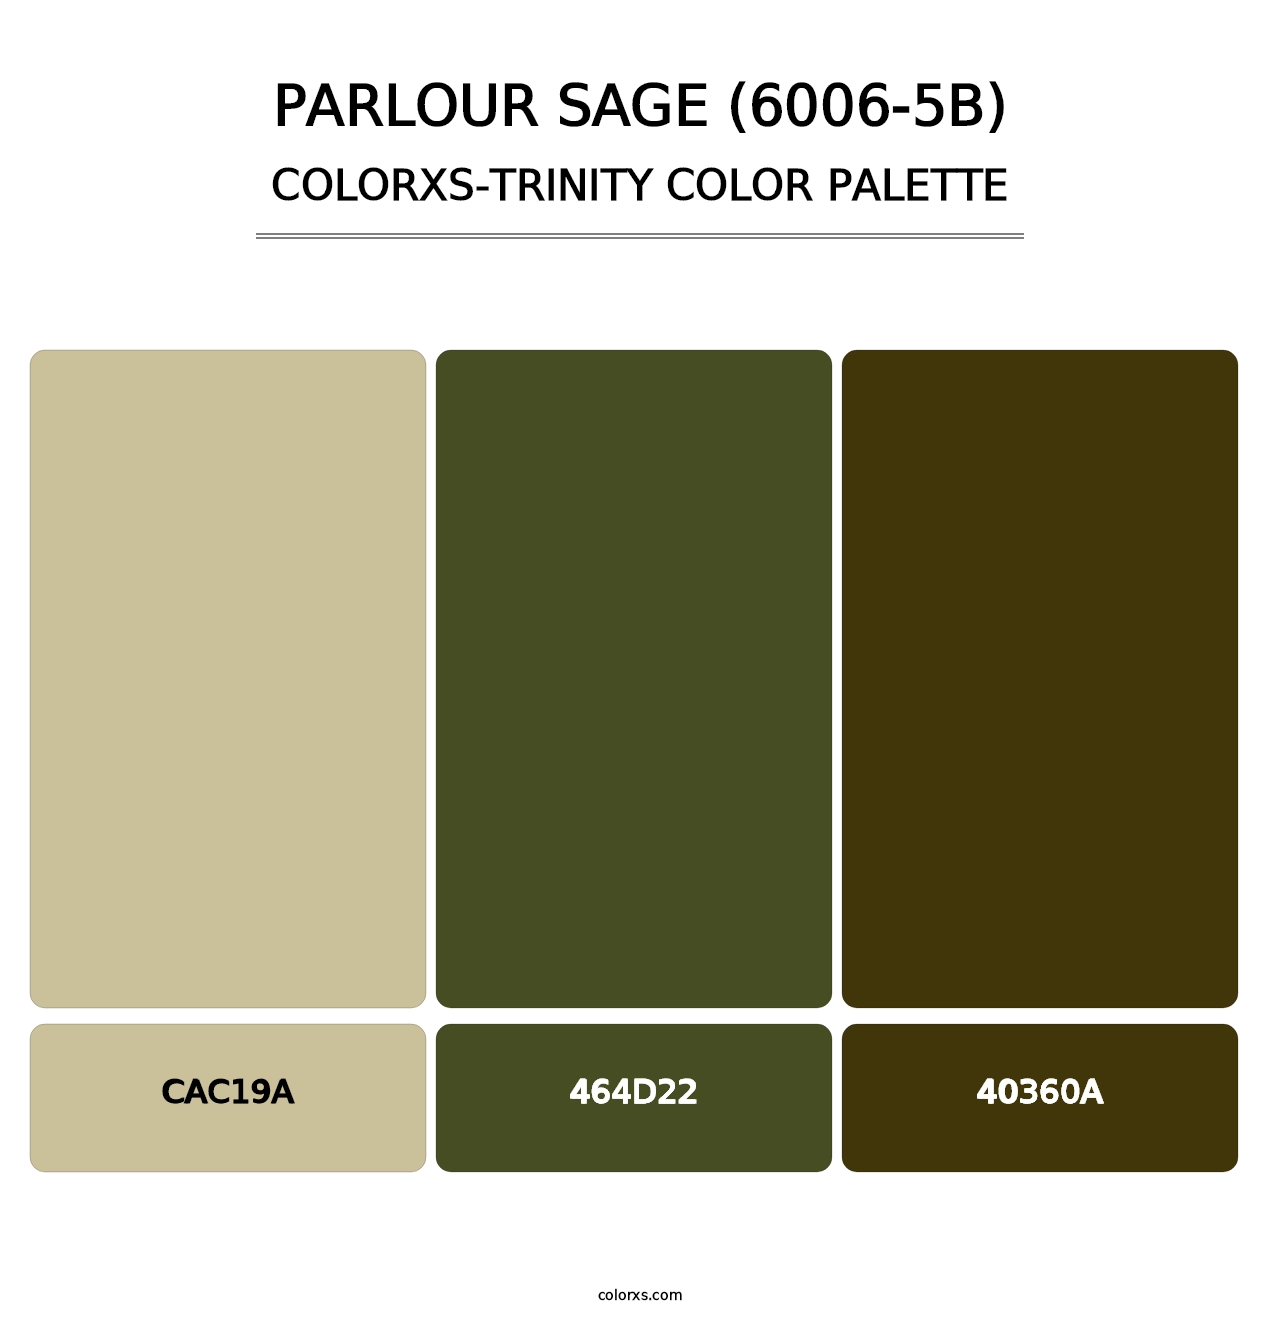 Parlour Sage (6006-5B) - Colorxs Trinity Palette